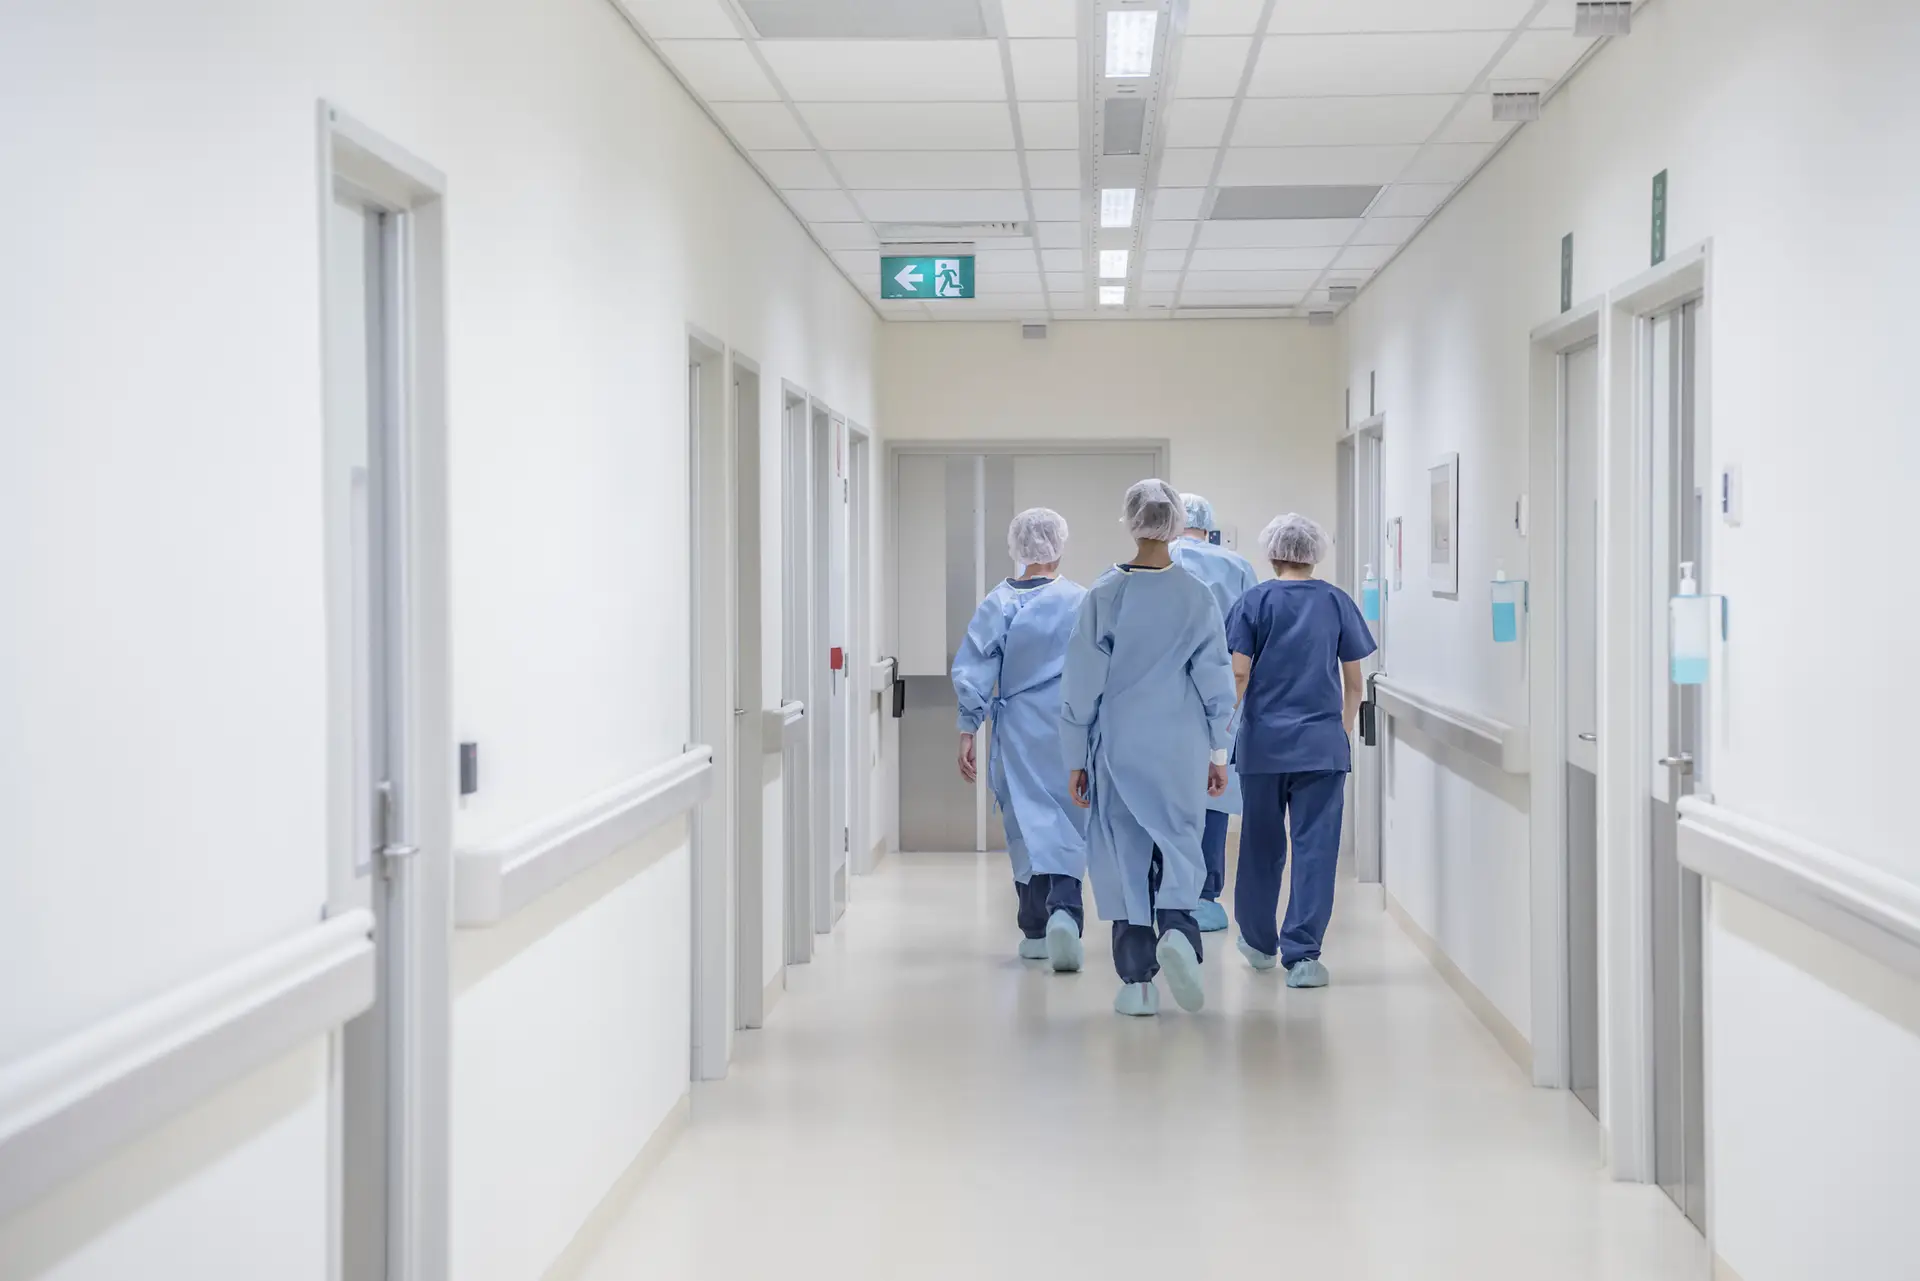 Os 22 hospitais portugueses que se comprometem a reduzir infeções